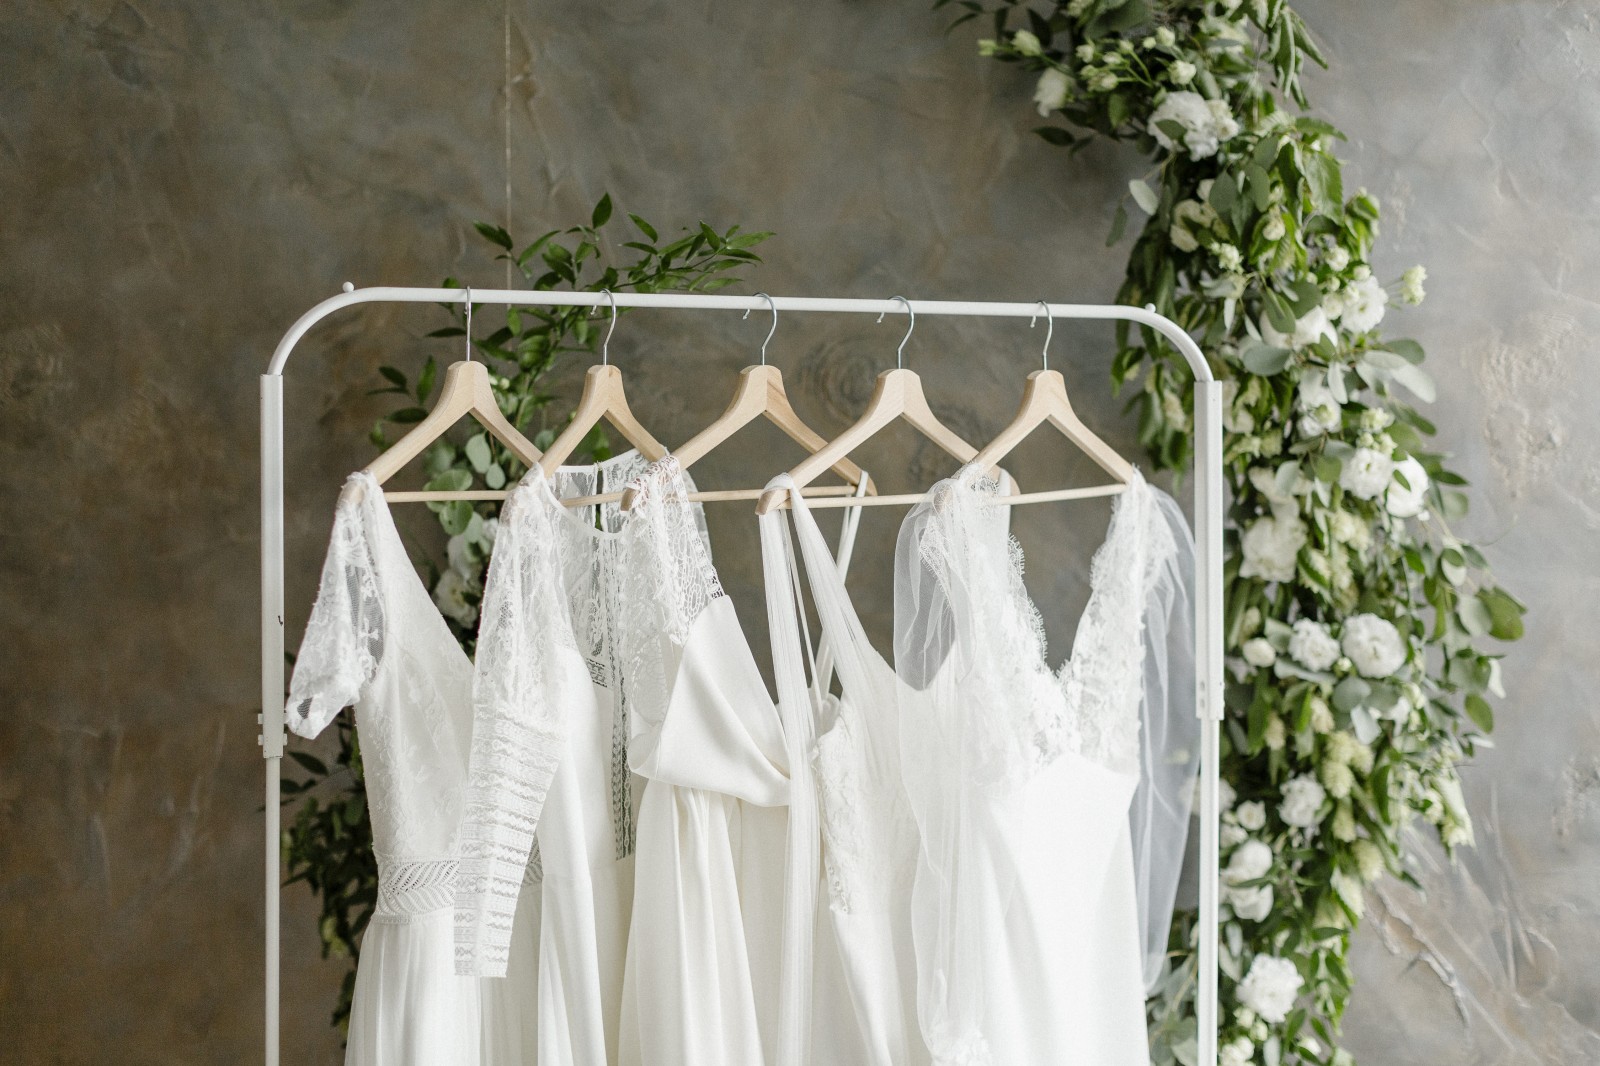 La collection bienveillance 2021 est composé de robe de mariée ecoresponsable, biodégradable et zéro déchet.